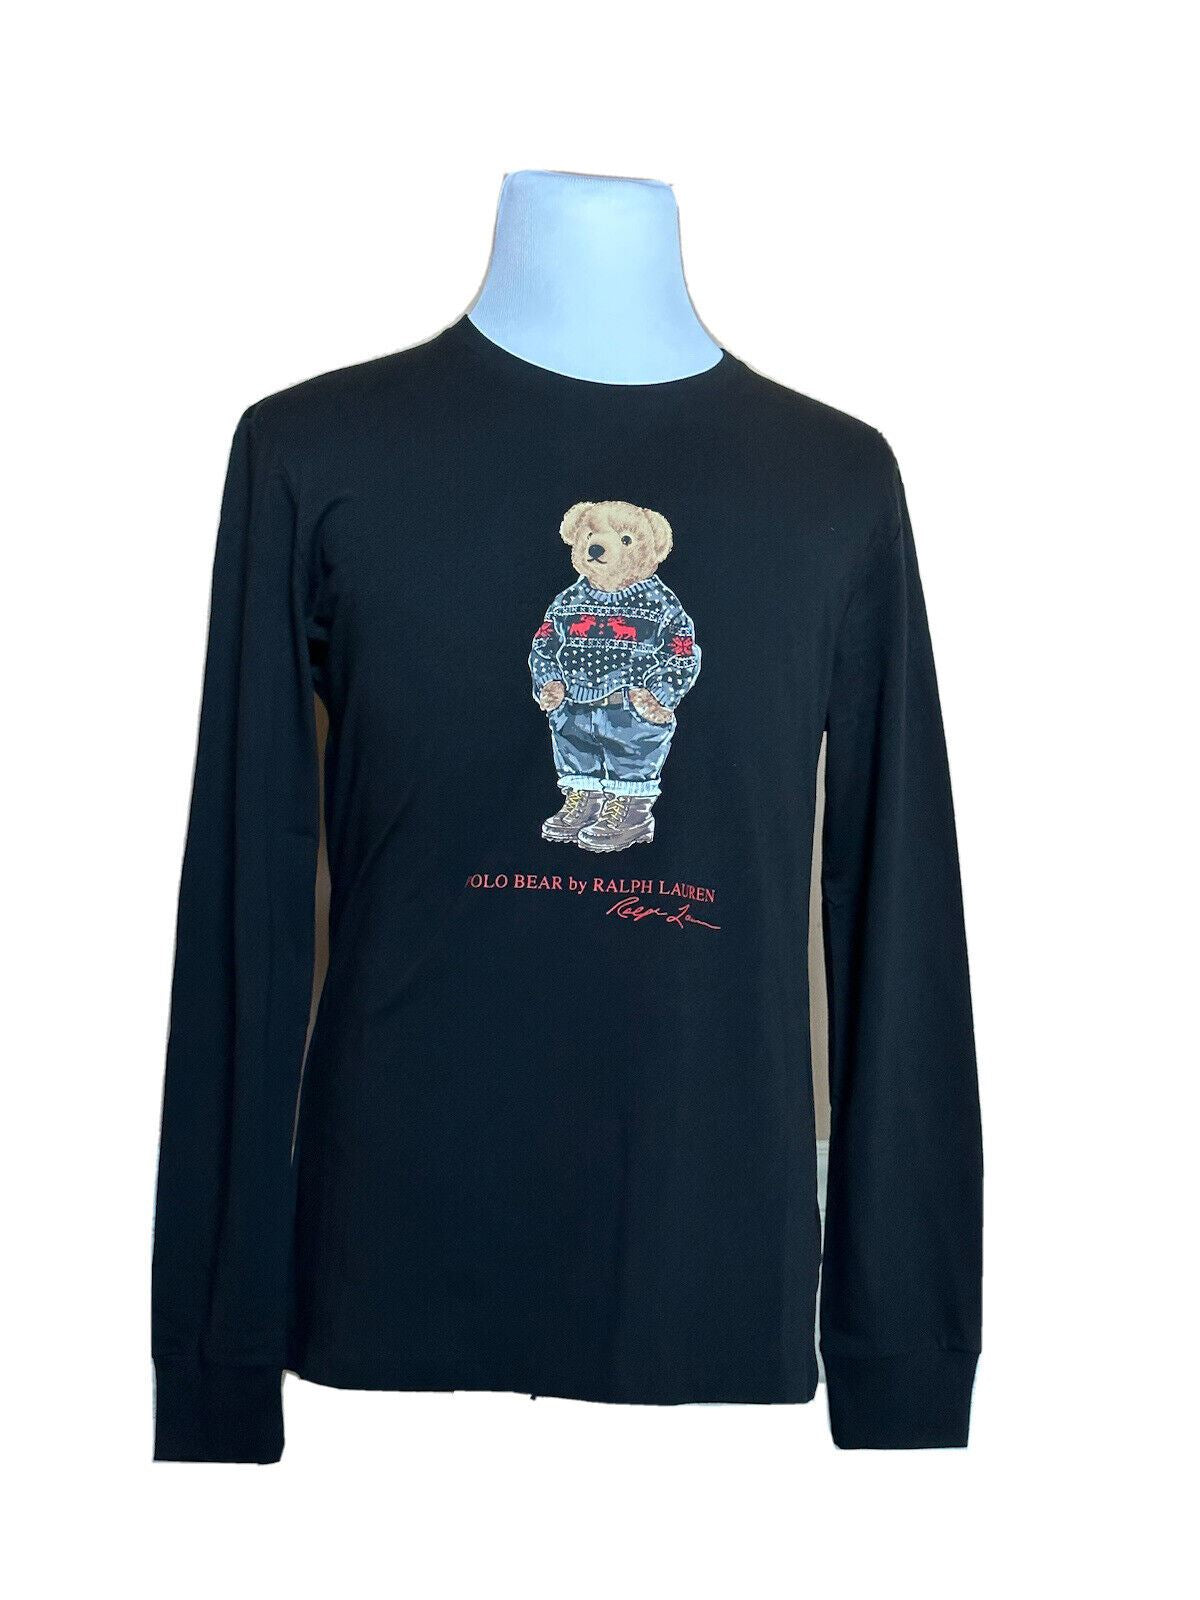 Neu mit Etikett: 79,50 $ Polo Ralph Lauren Langarm-T-Shirt mit Bärenmotiv, Schwarz, XL 